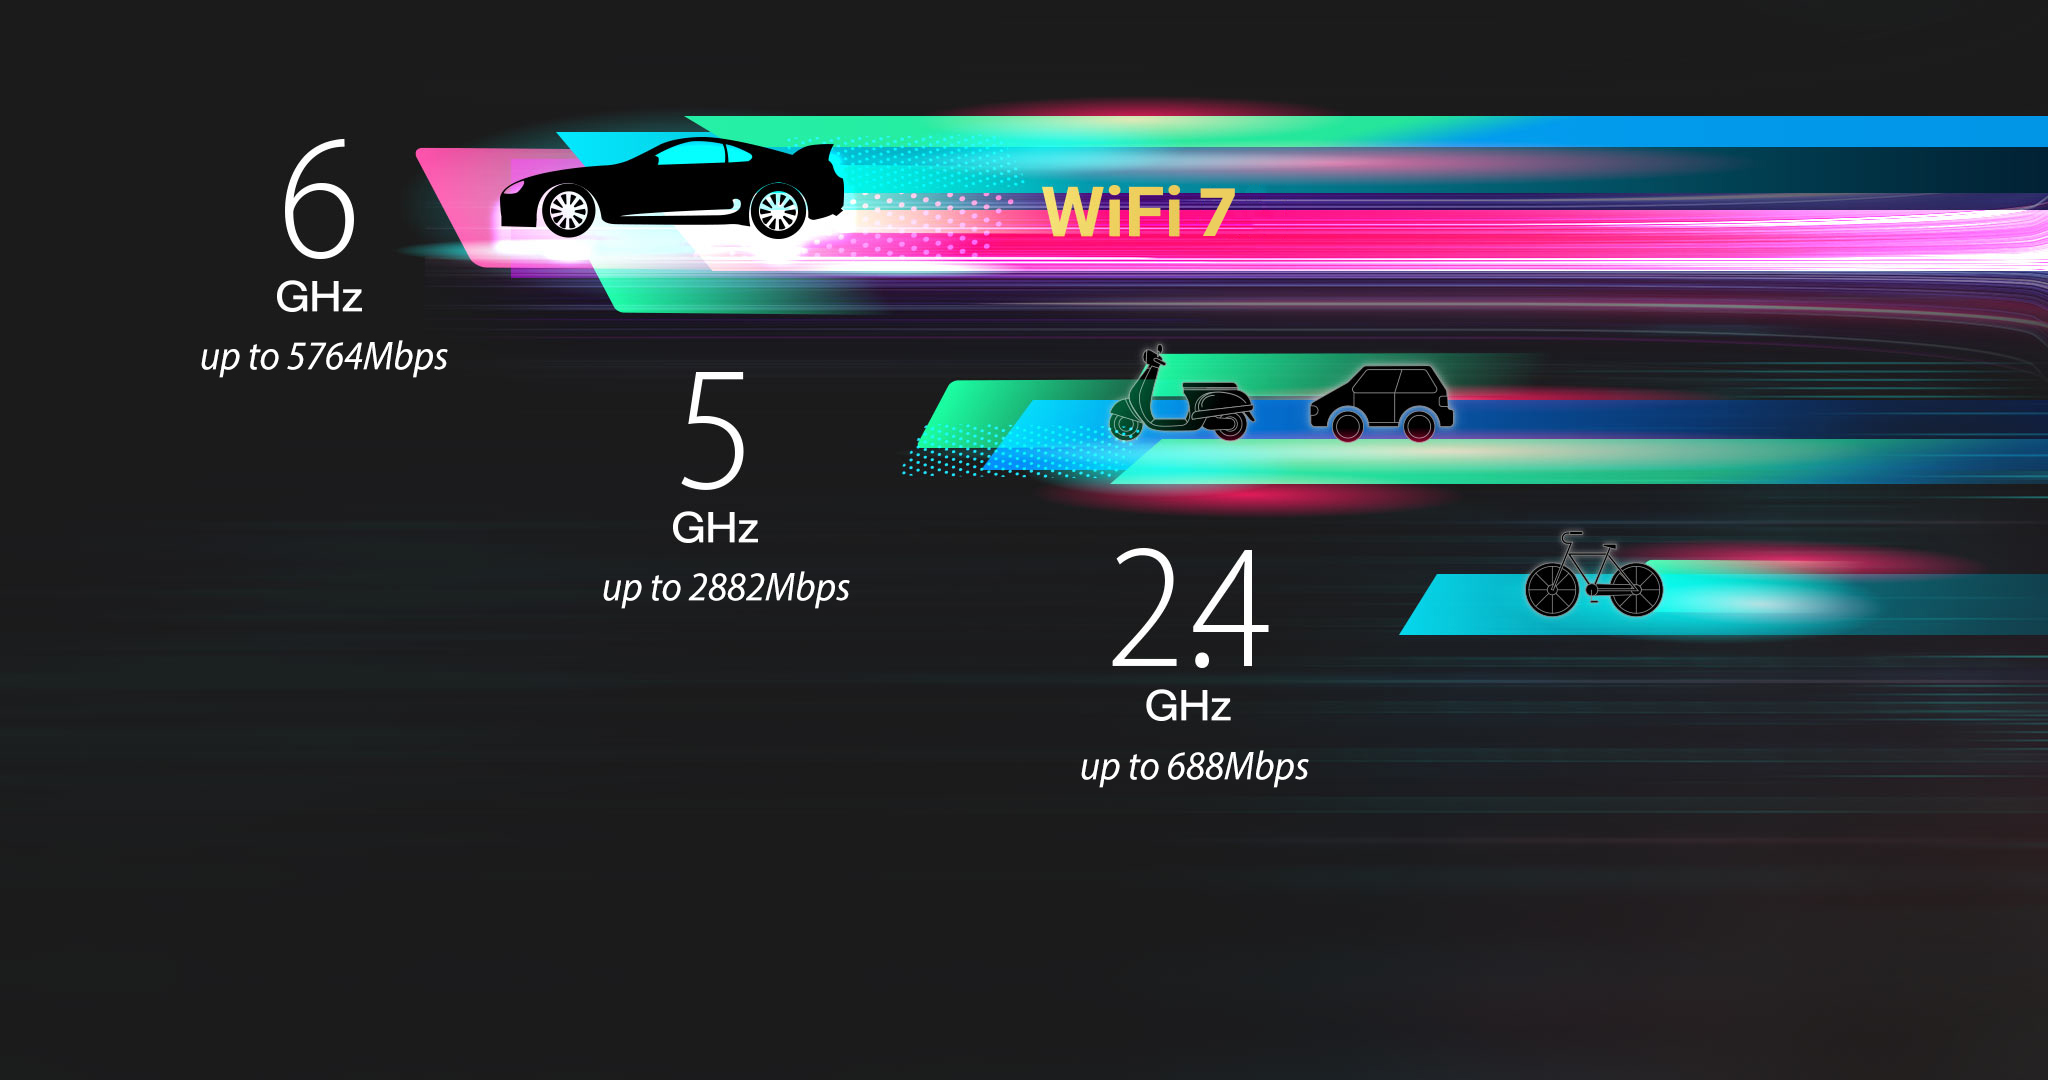 La banda WiFi 7 de 6GHz proporciona canales de 320MHz, aumenta la velocidad hasta 5764Mbps.